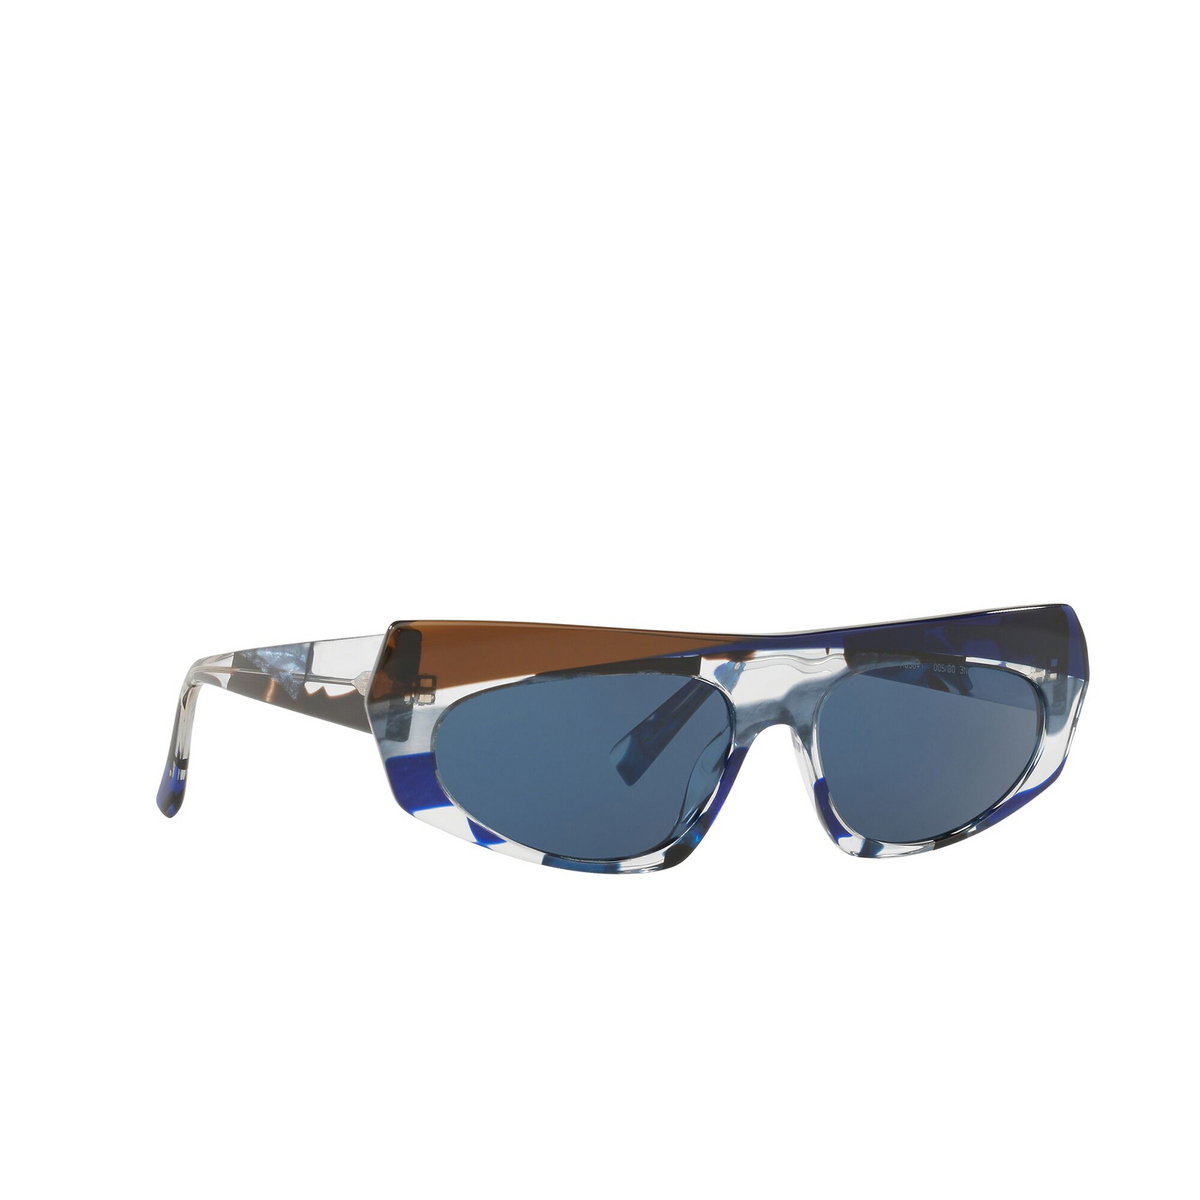 Alain Mikli® Irregular Sunglasses: Pose A05041 color Blue Waves / Cob Blue / Espresso 005/80 - three-quarters view.